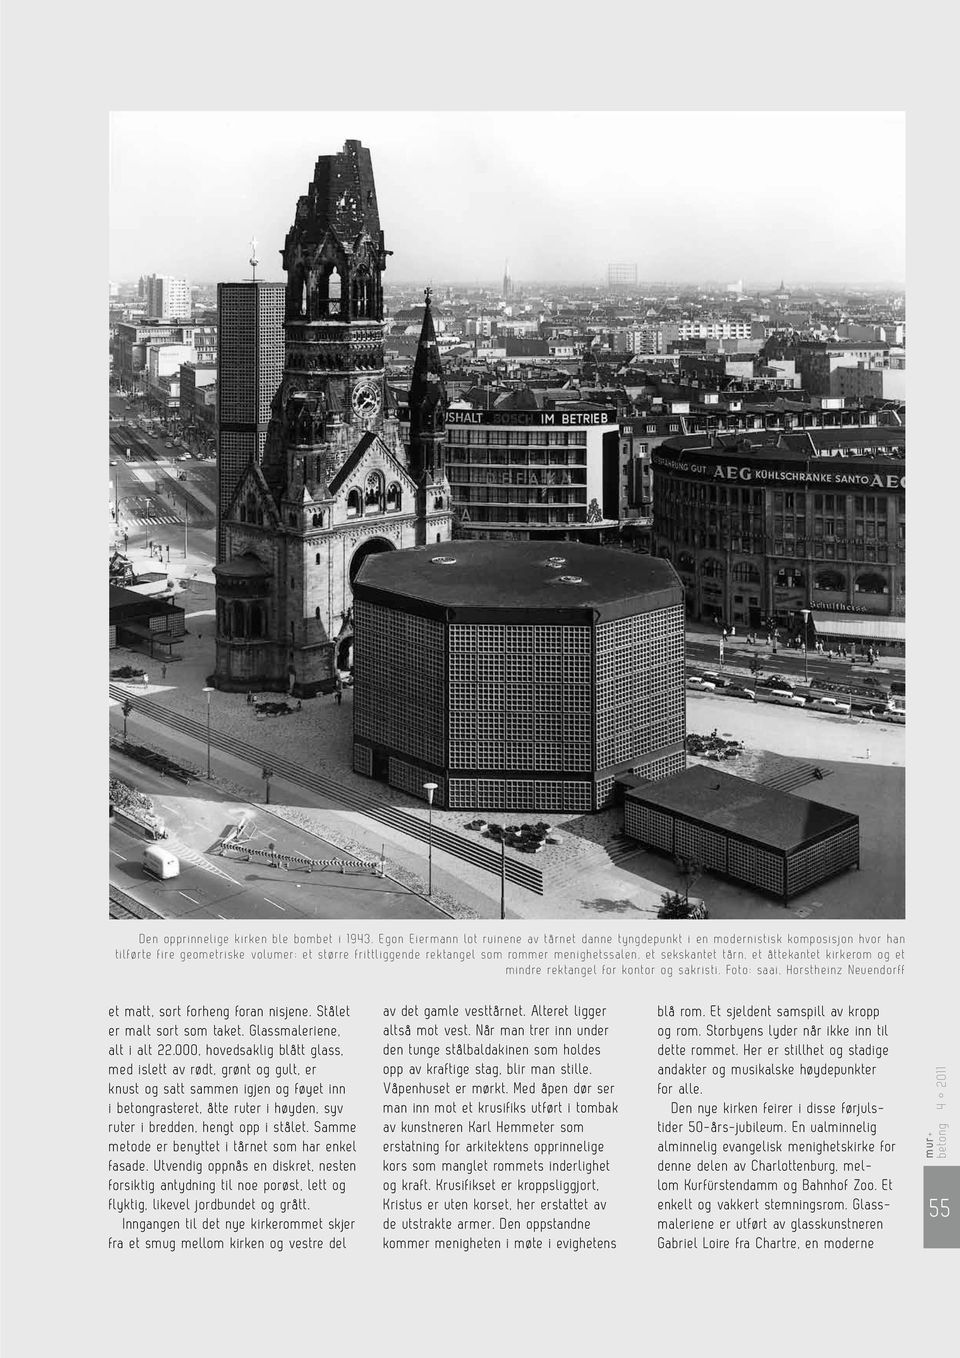 sekskantet tårn, et åttekantet kirkerom og et mindre rektangel for kontor og sakristi. Foto: saai, Horstheinz Neuendorff et matt, sort forheng foran nisjene. Stålet er malt sort som taket.